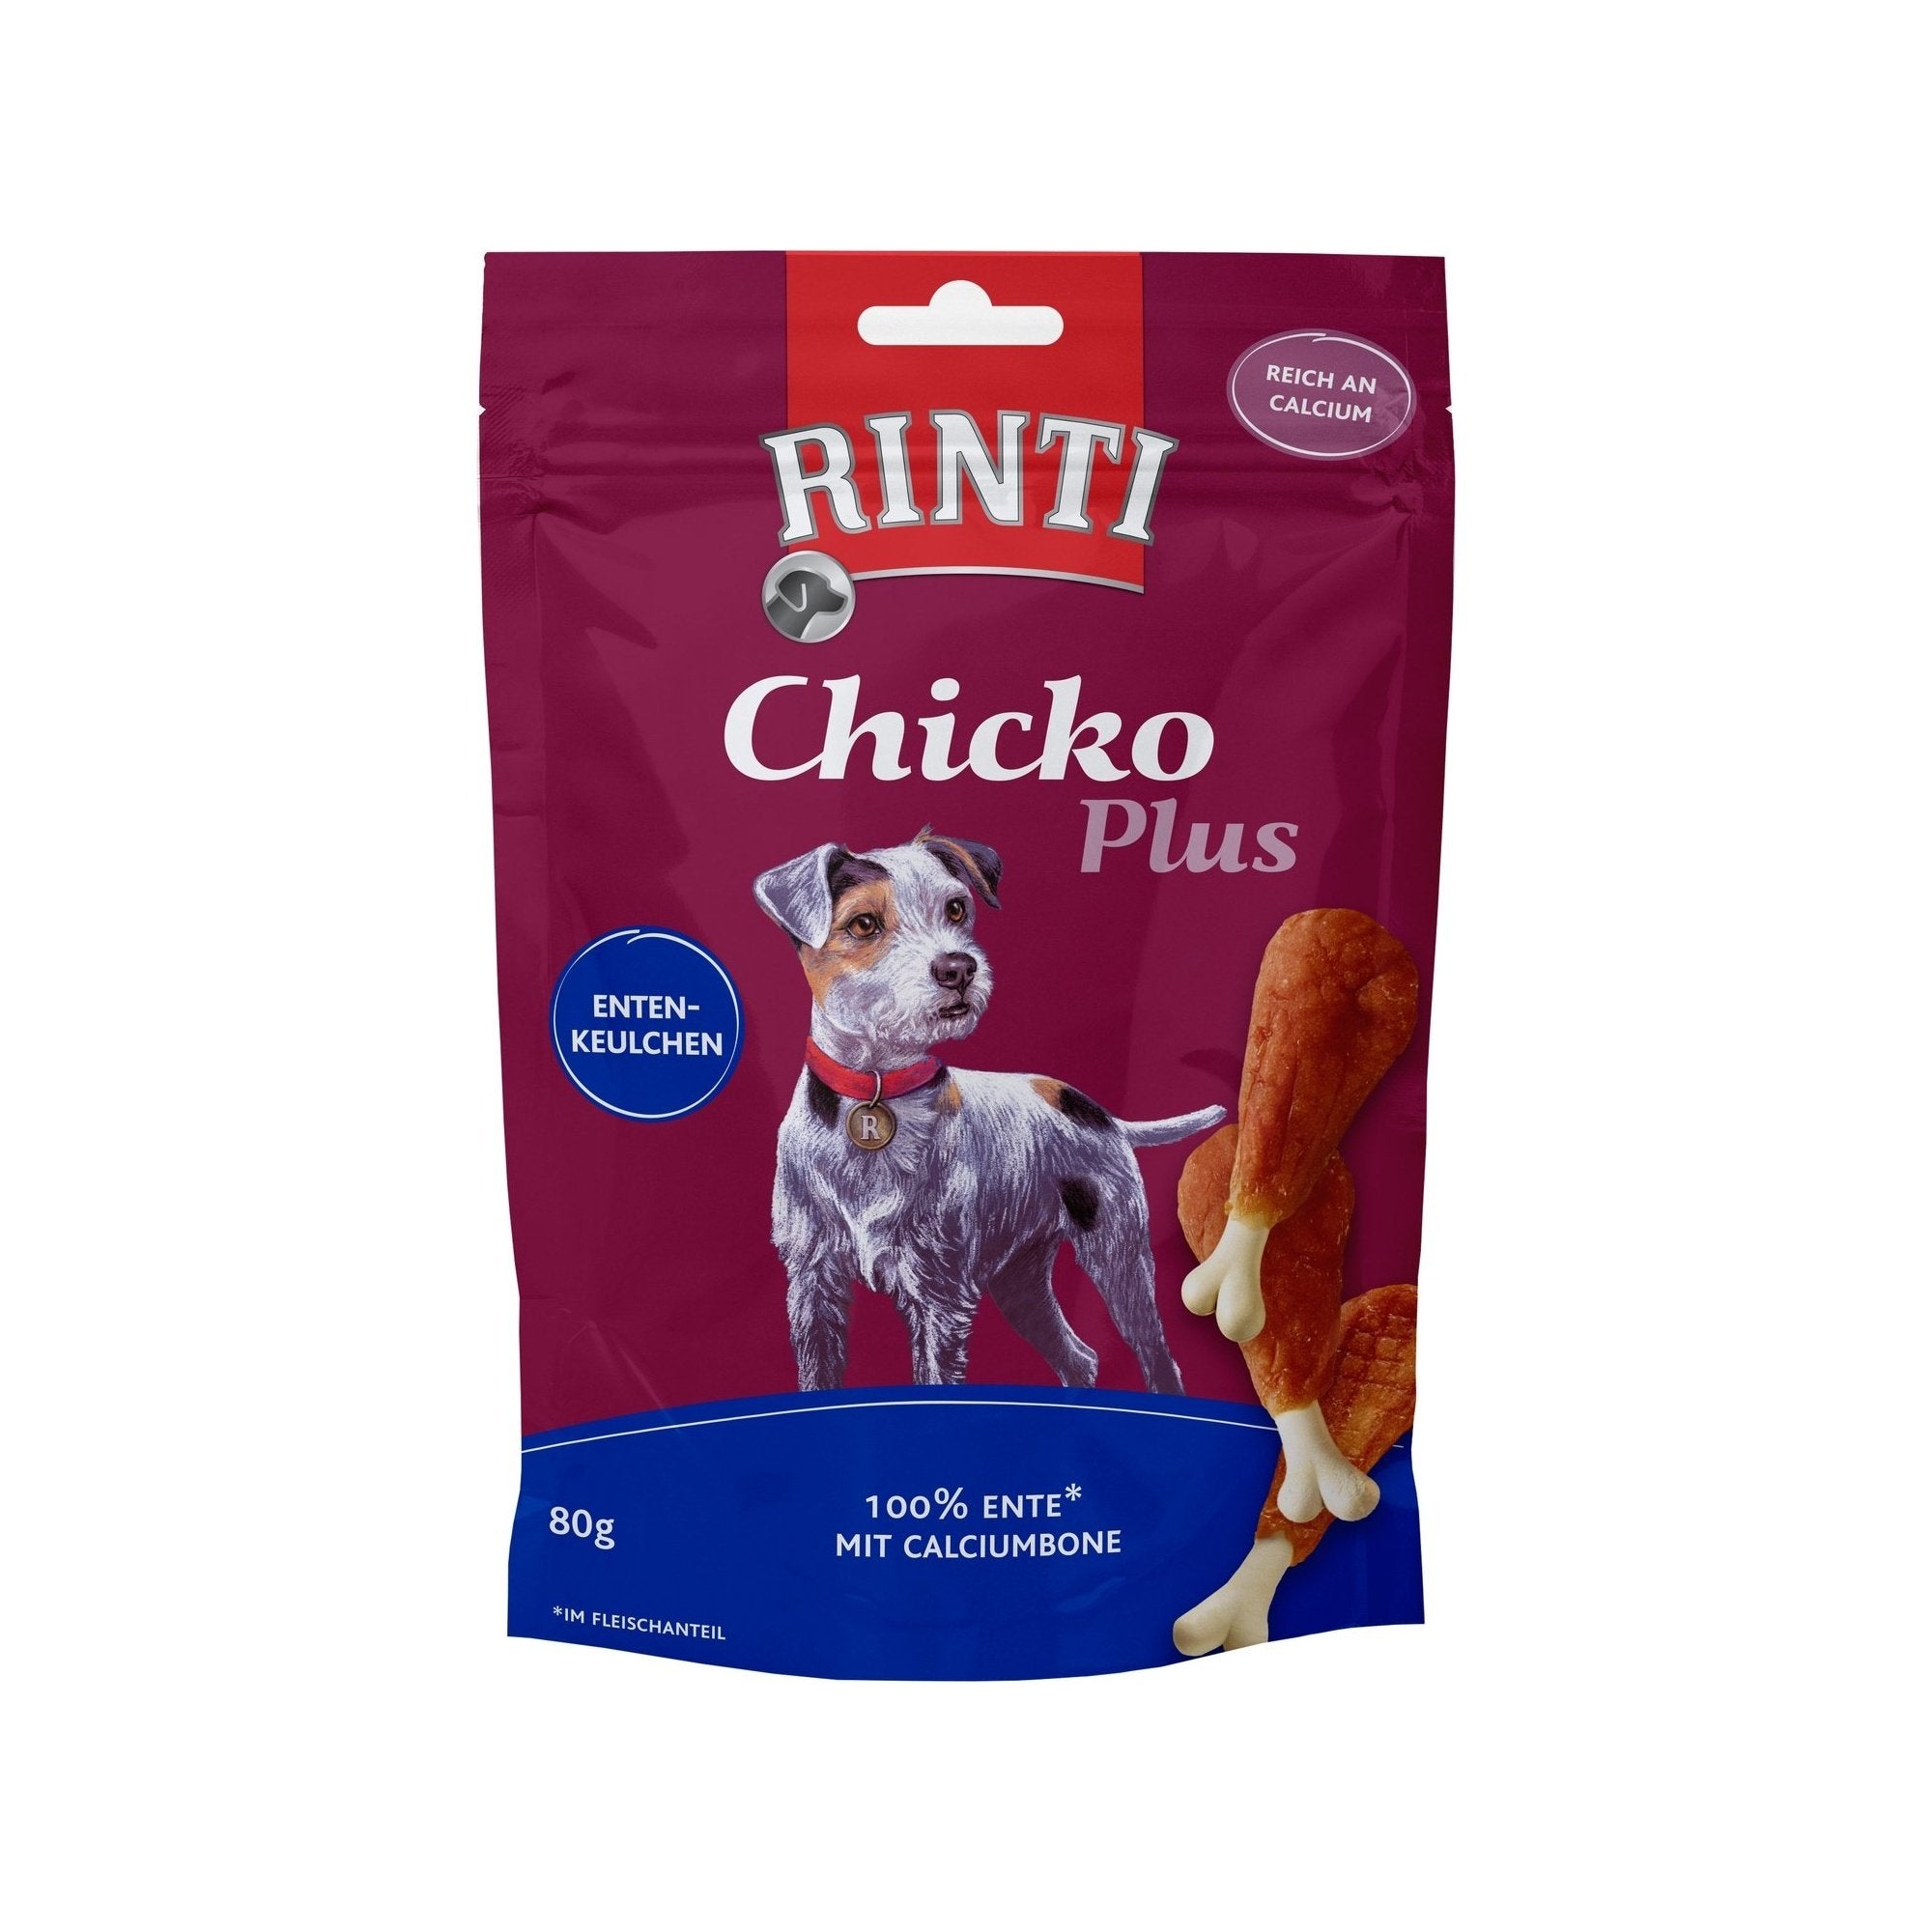 Artikel mit dem Namen Rinti Snack Chicko Plus Entenkeulchen im Shop von zoo.de , dem Onlineshop für nachhaltiges Hundefutter und Katzenfutter.